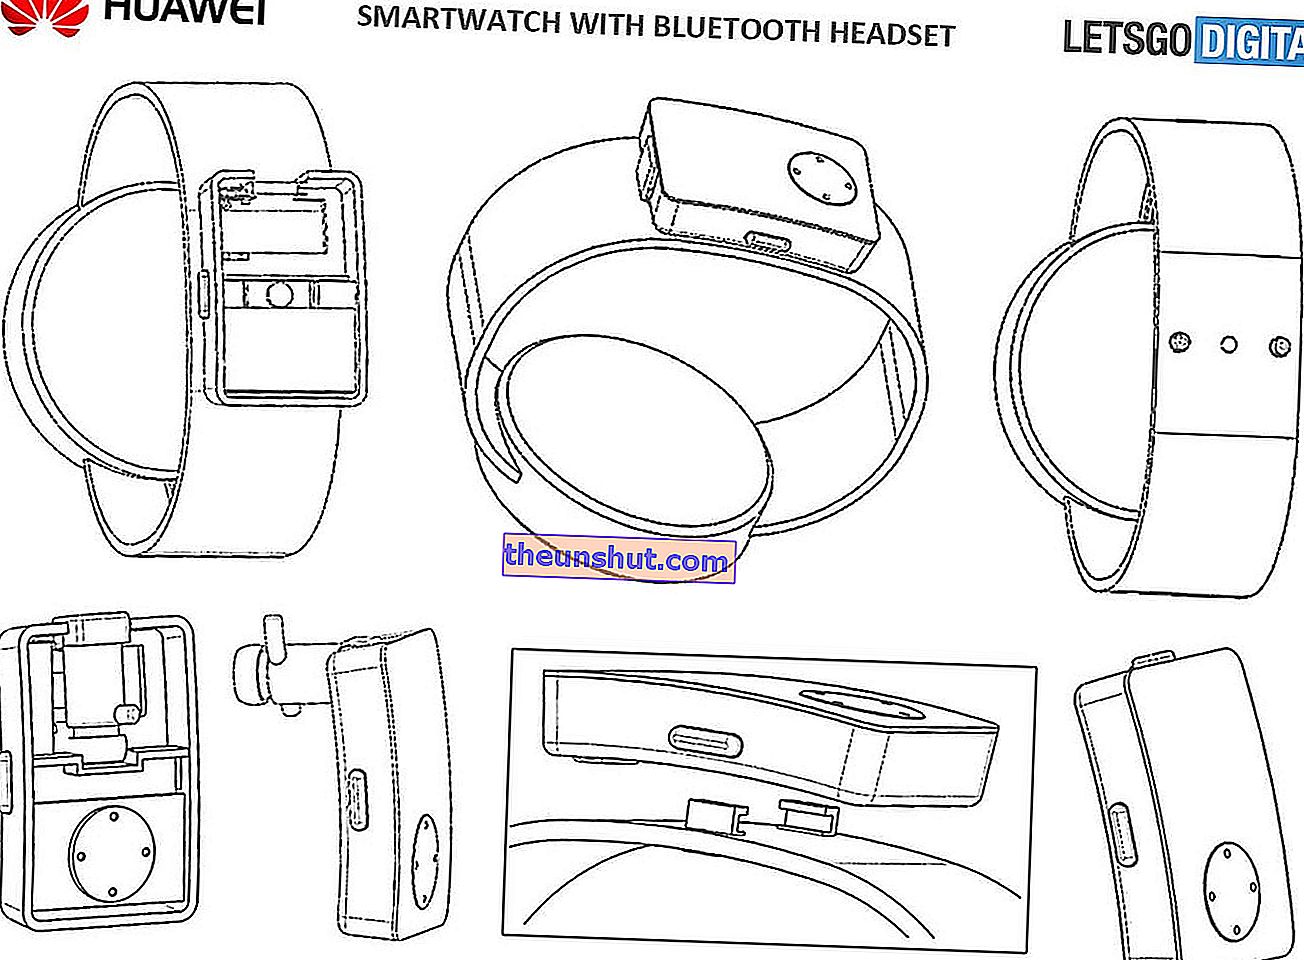 Huawei Watch